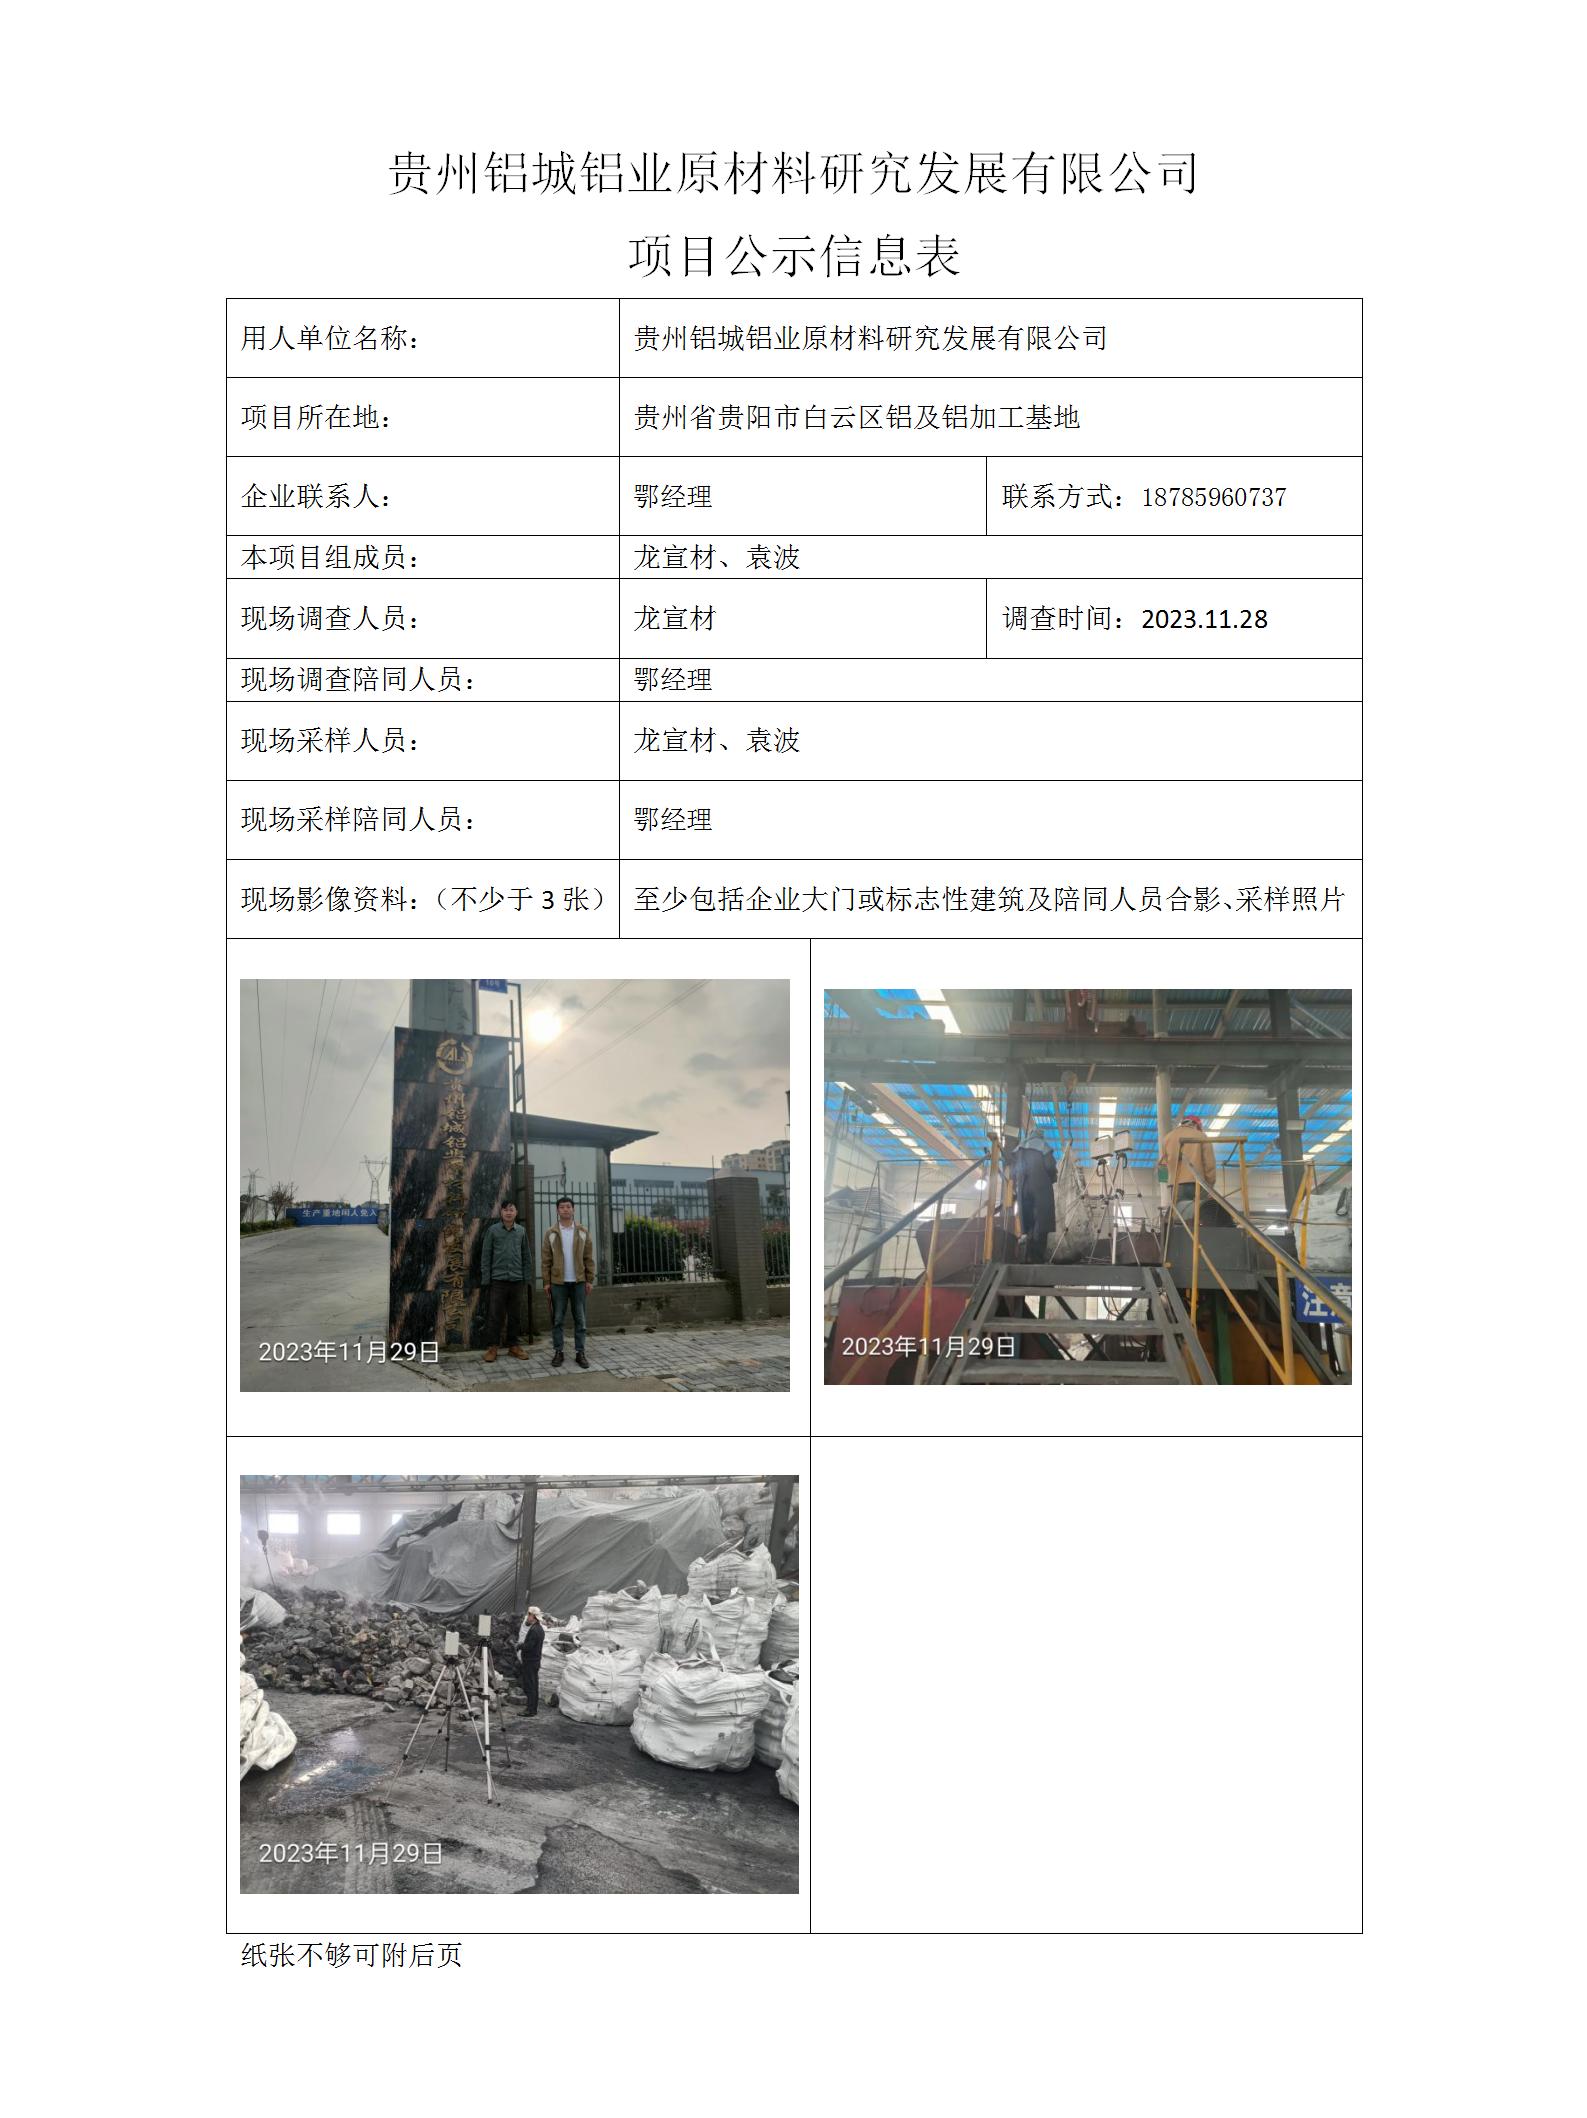 贵州铝城铝业原材料研究发展有限公司项目公示信息表_01.jpg